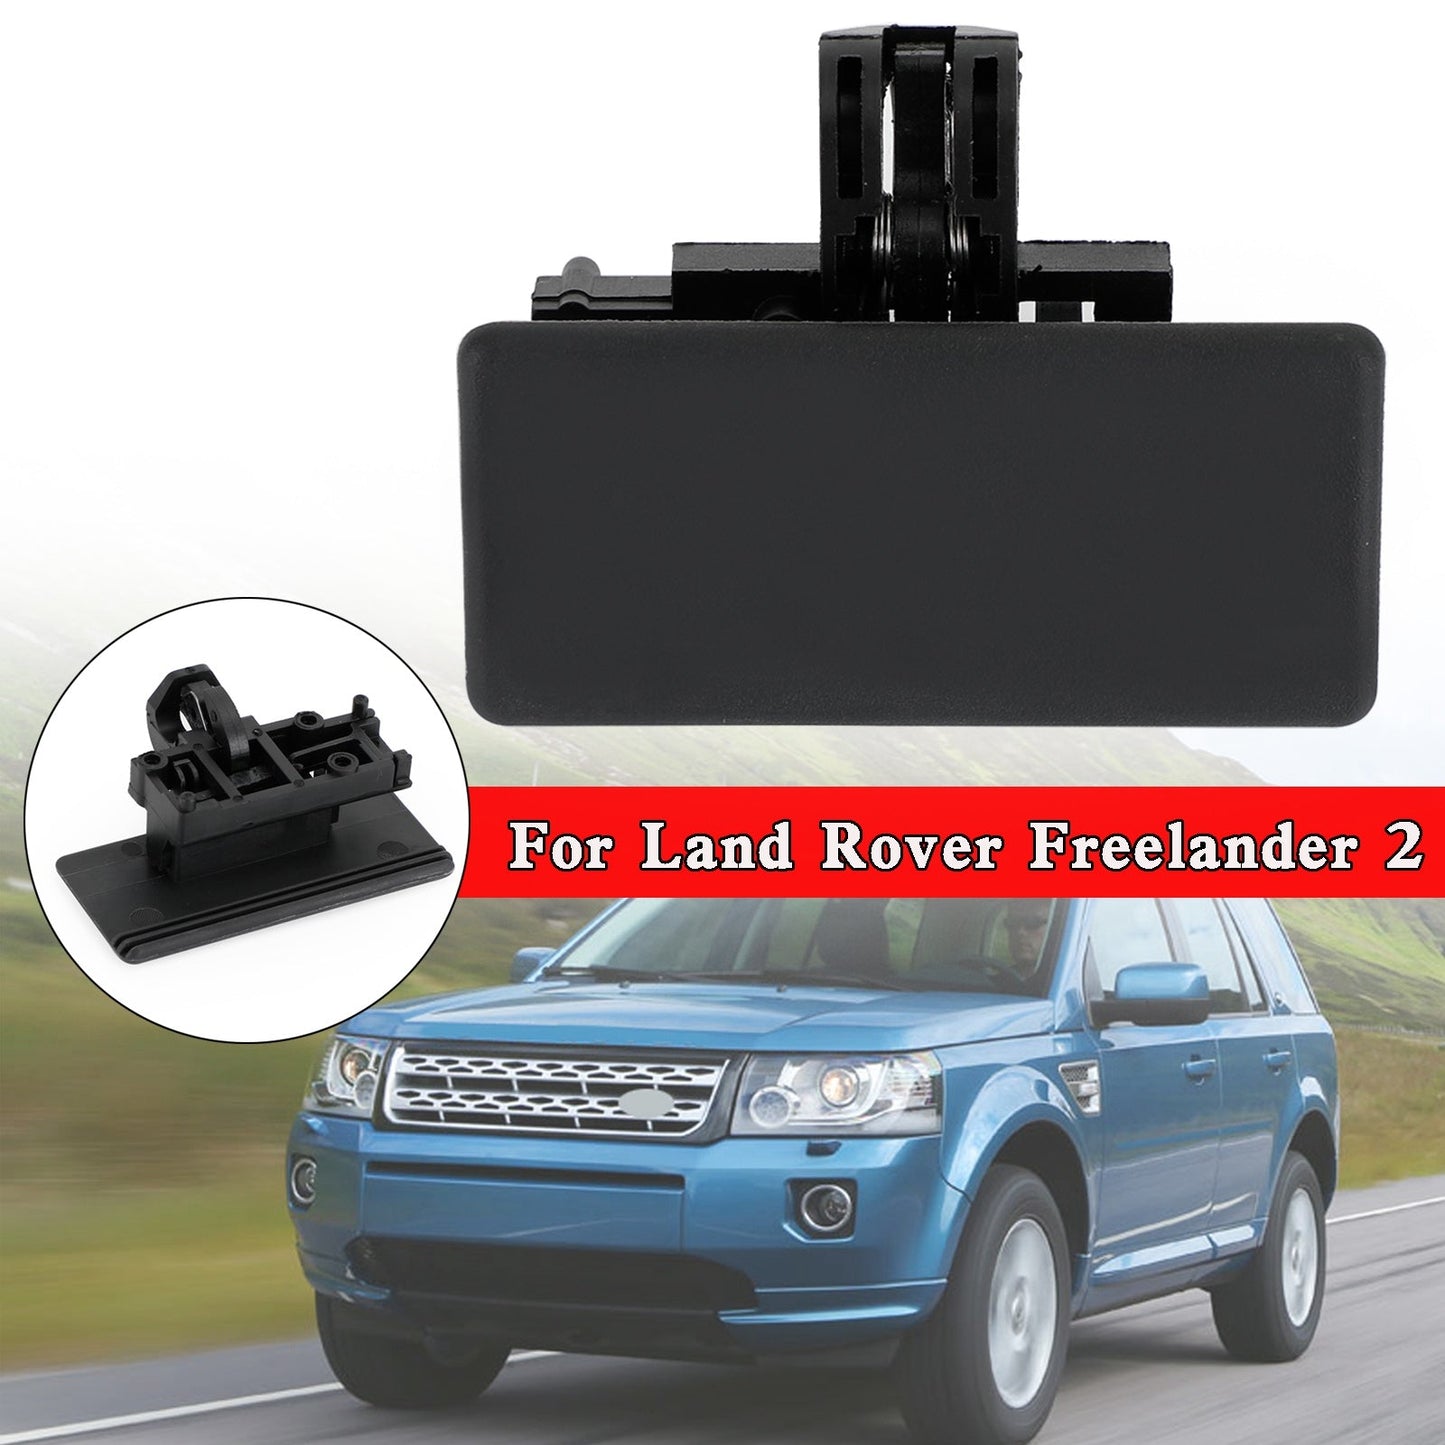 Handschuhbox Release Latch Griff LR007072 für Land Rover Freelander 2 Generikum